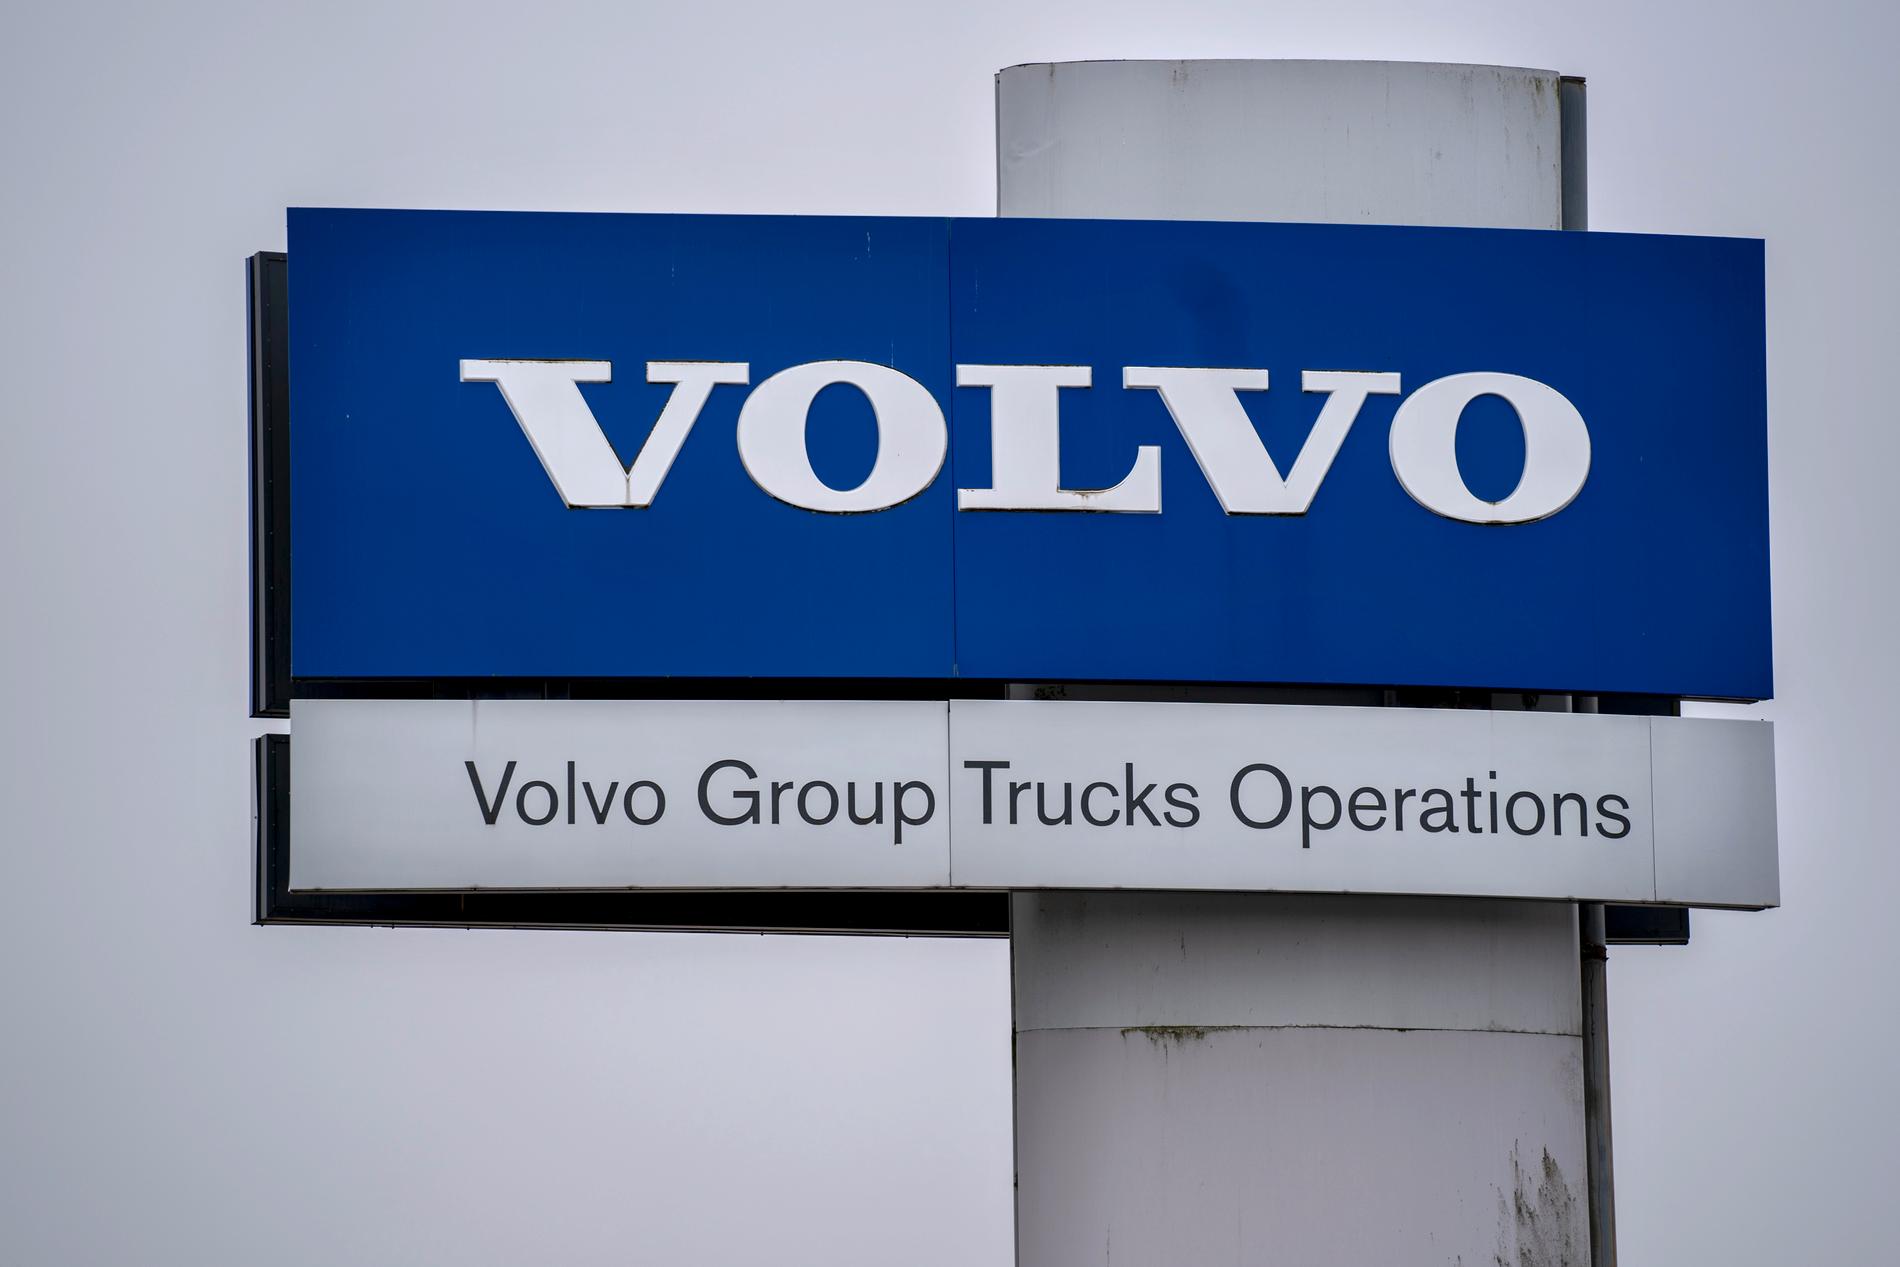 För att möta efterfrågan på eldrivna tunga lastbilar och maskiner vill Volvokoncernen starta en batterifabrik i Sverige. Arkivbild.